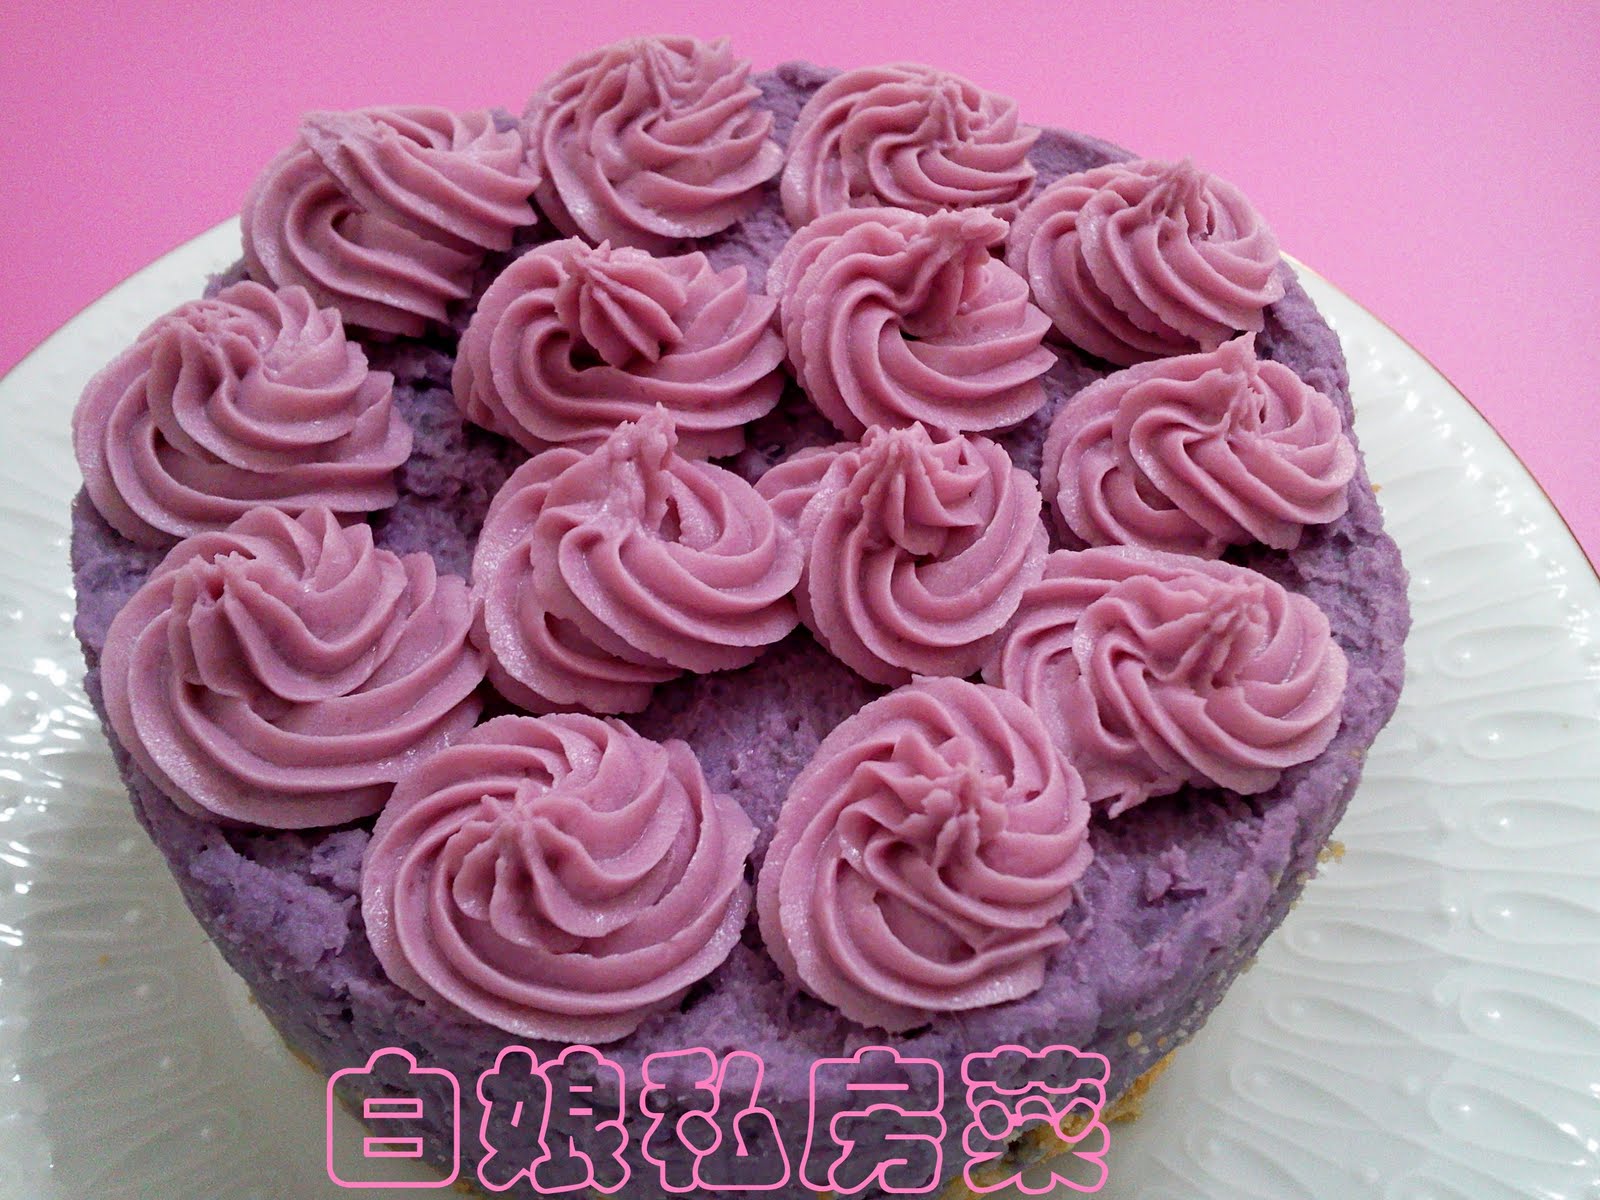 紫薯芝士蛋糕 by Irene - 愛料理